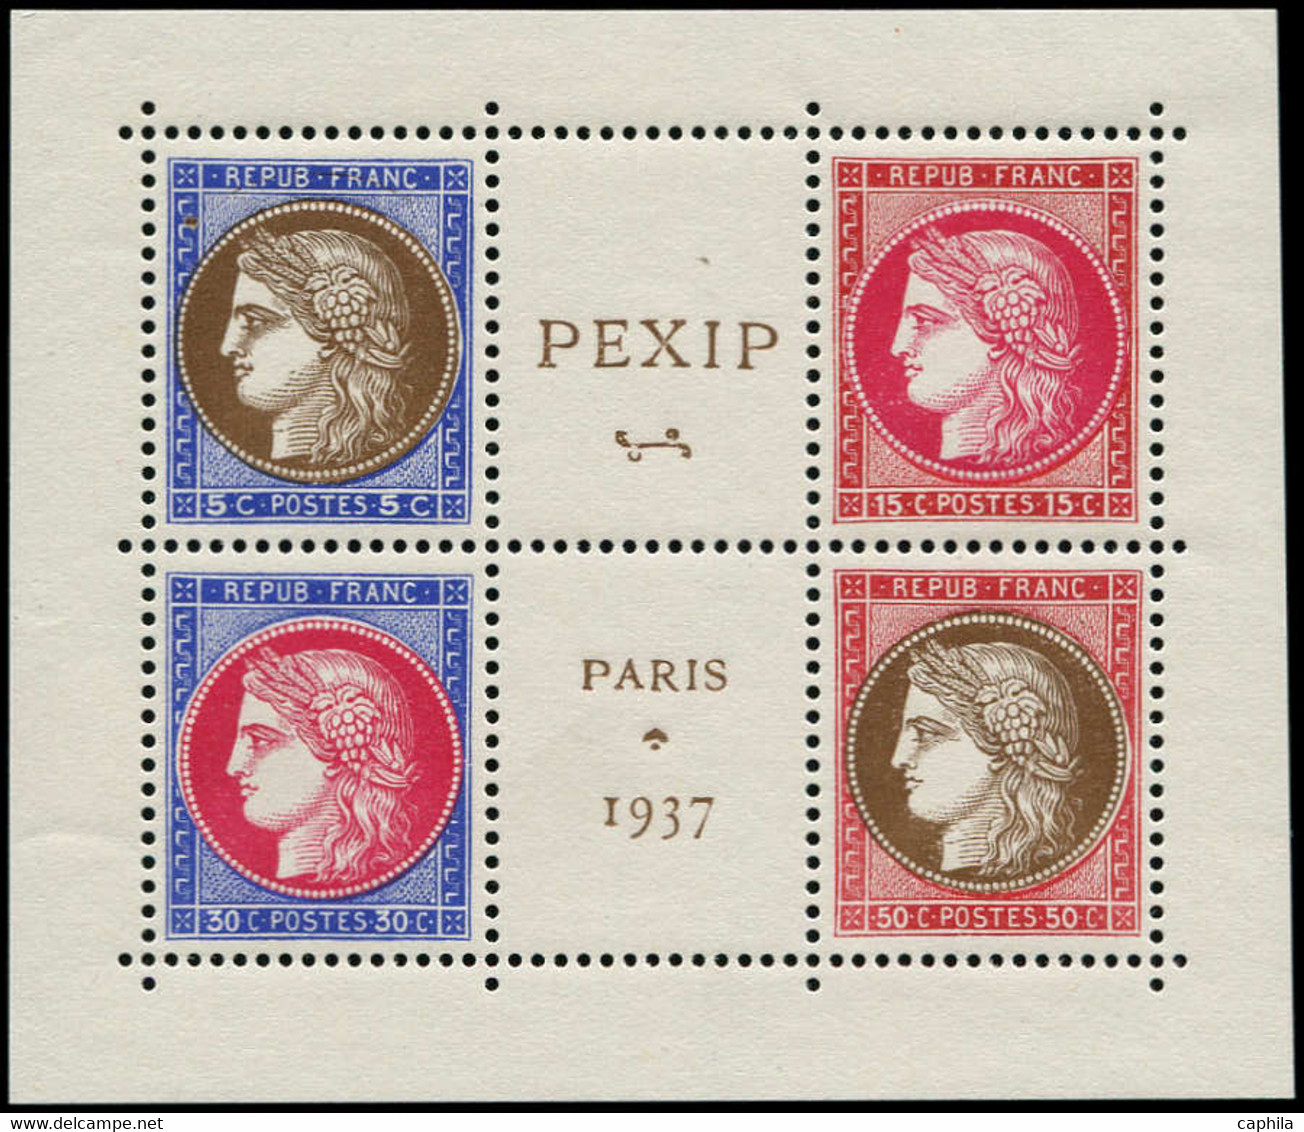 FRANCE Poste ** - 348/51, Bloc De 4 Avec La Vignette: Pexip - Cote: 450 - Unused Stamps